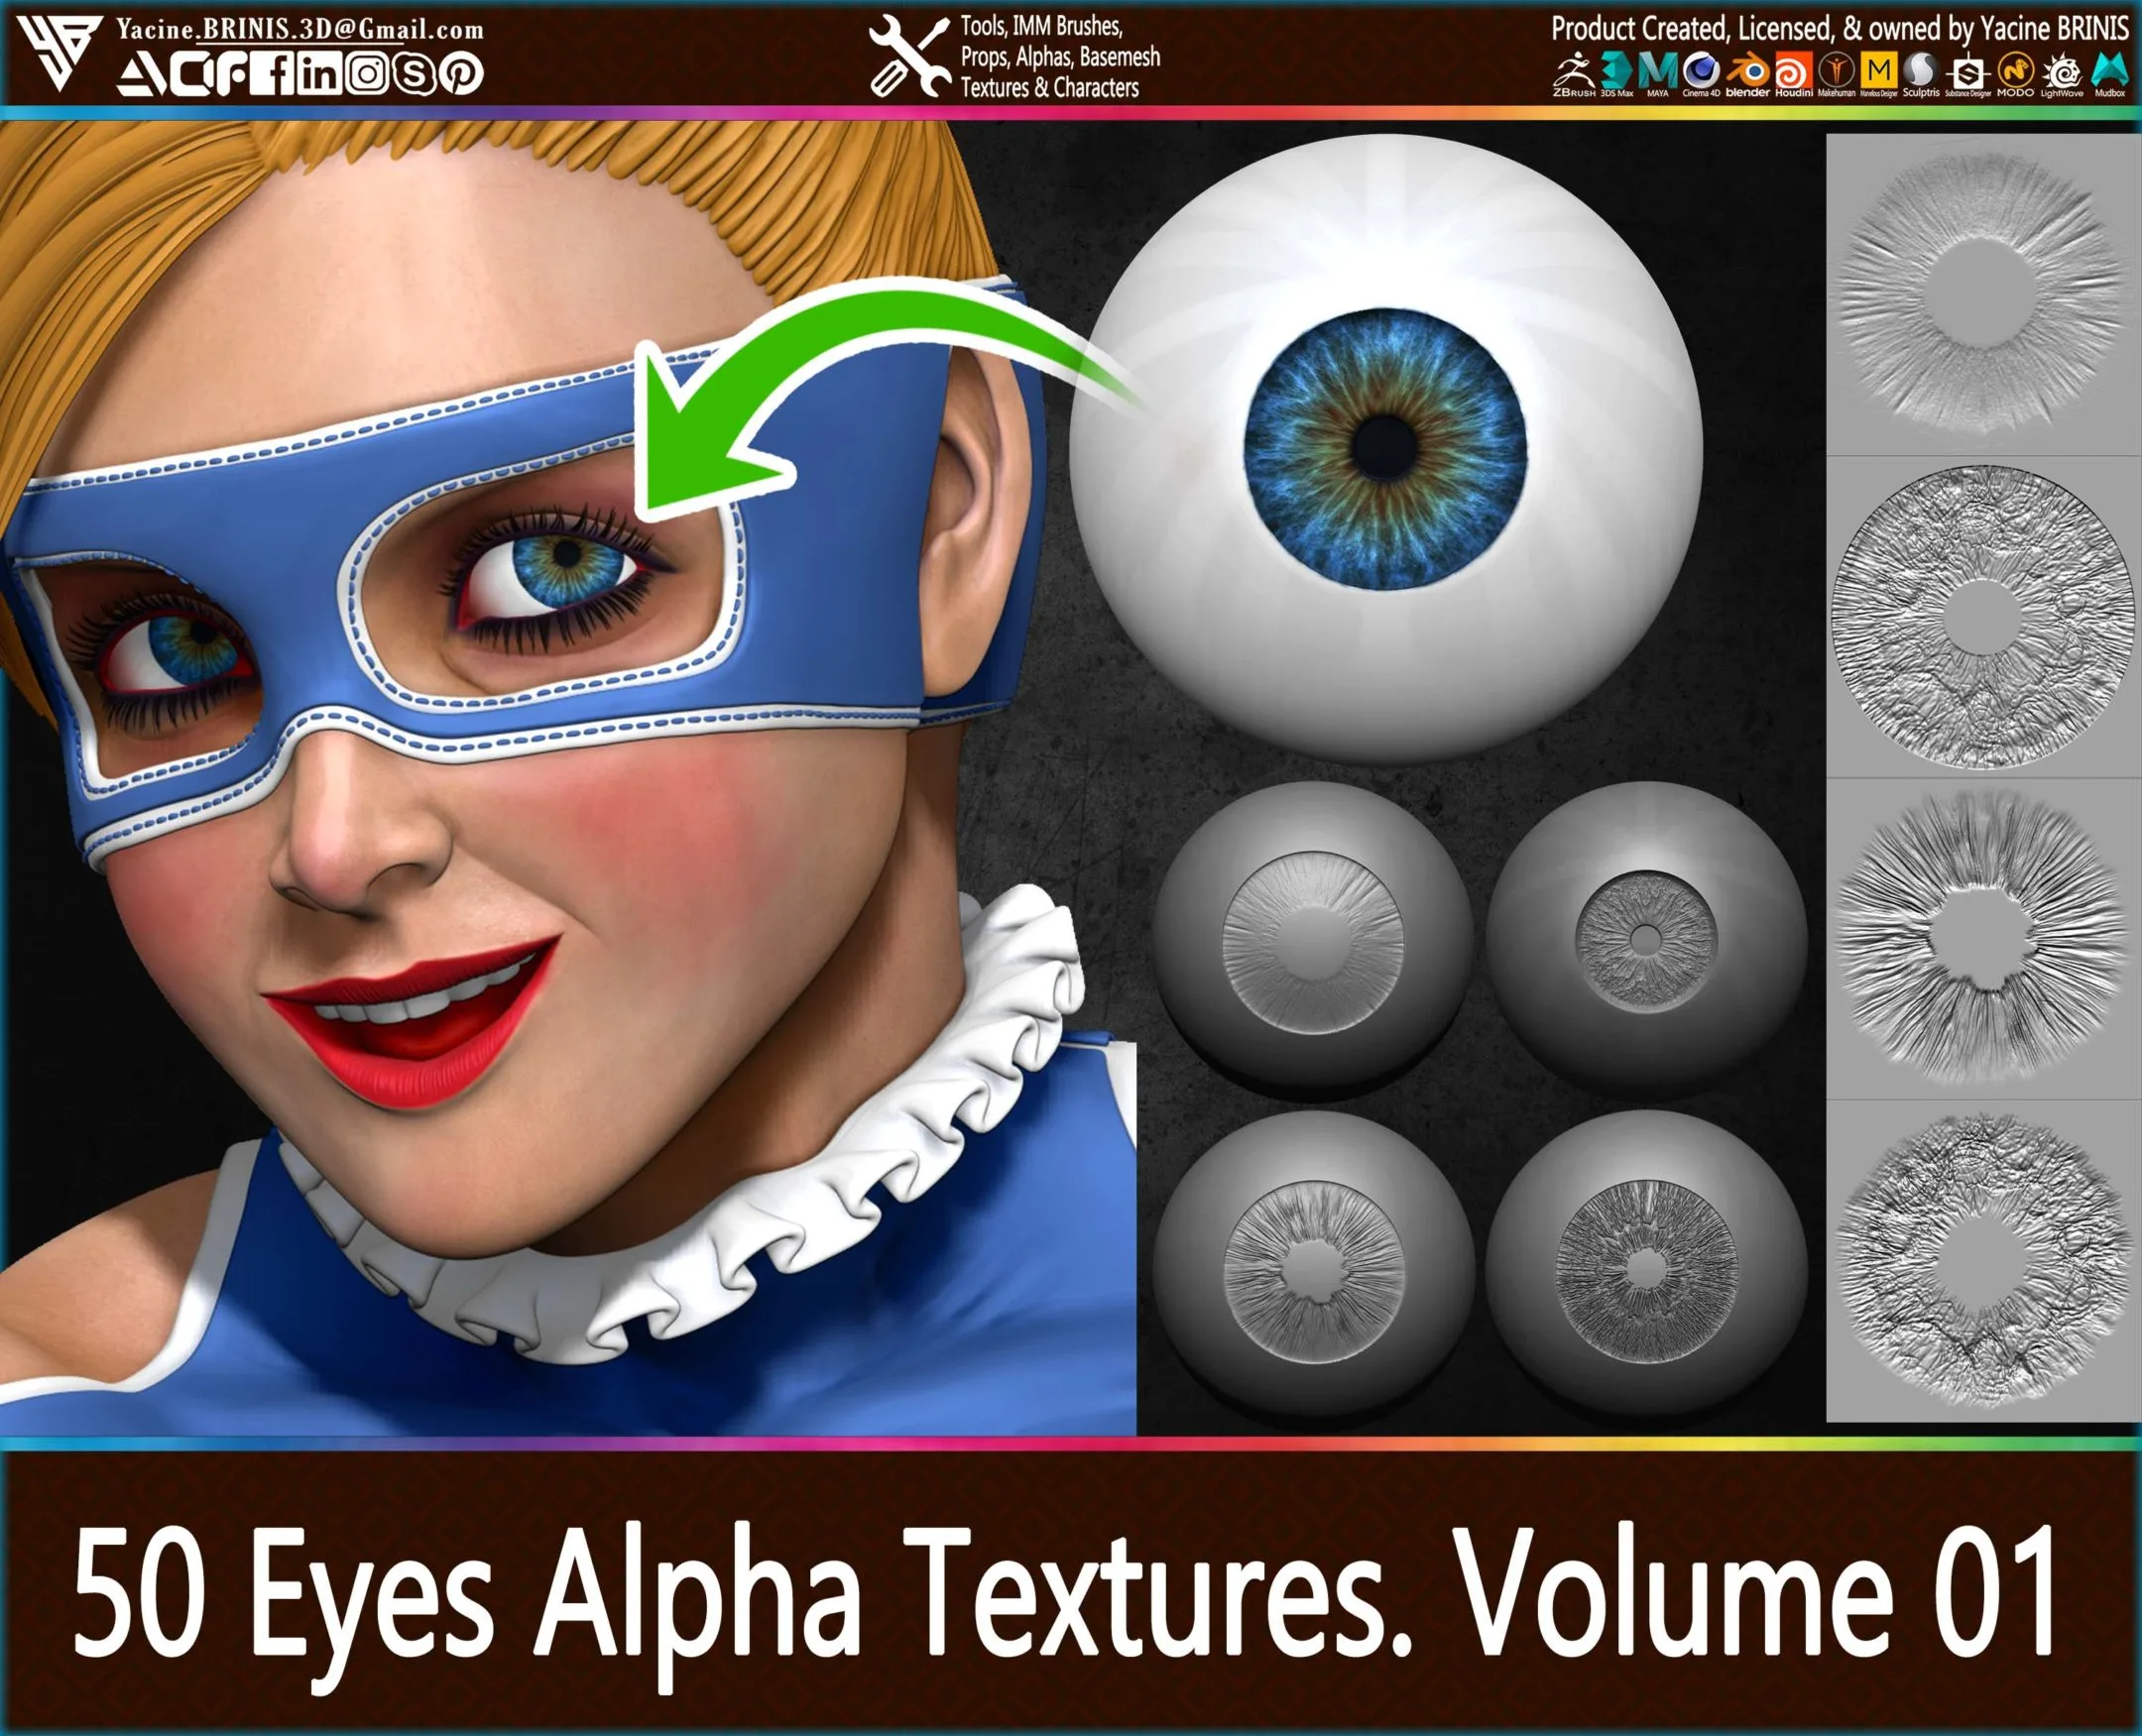 50 Eyes Textures & 20 Eyes Alpha Textures Pack Vol 01